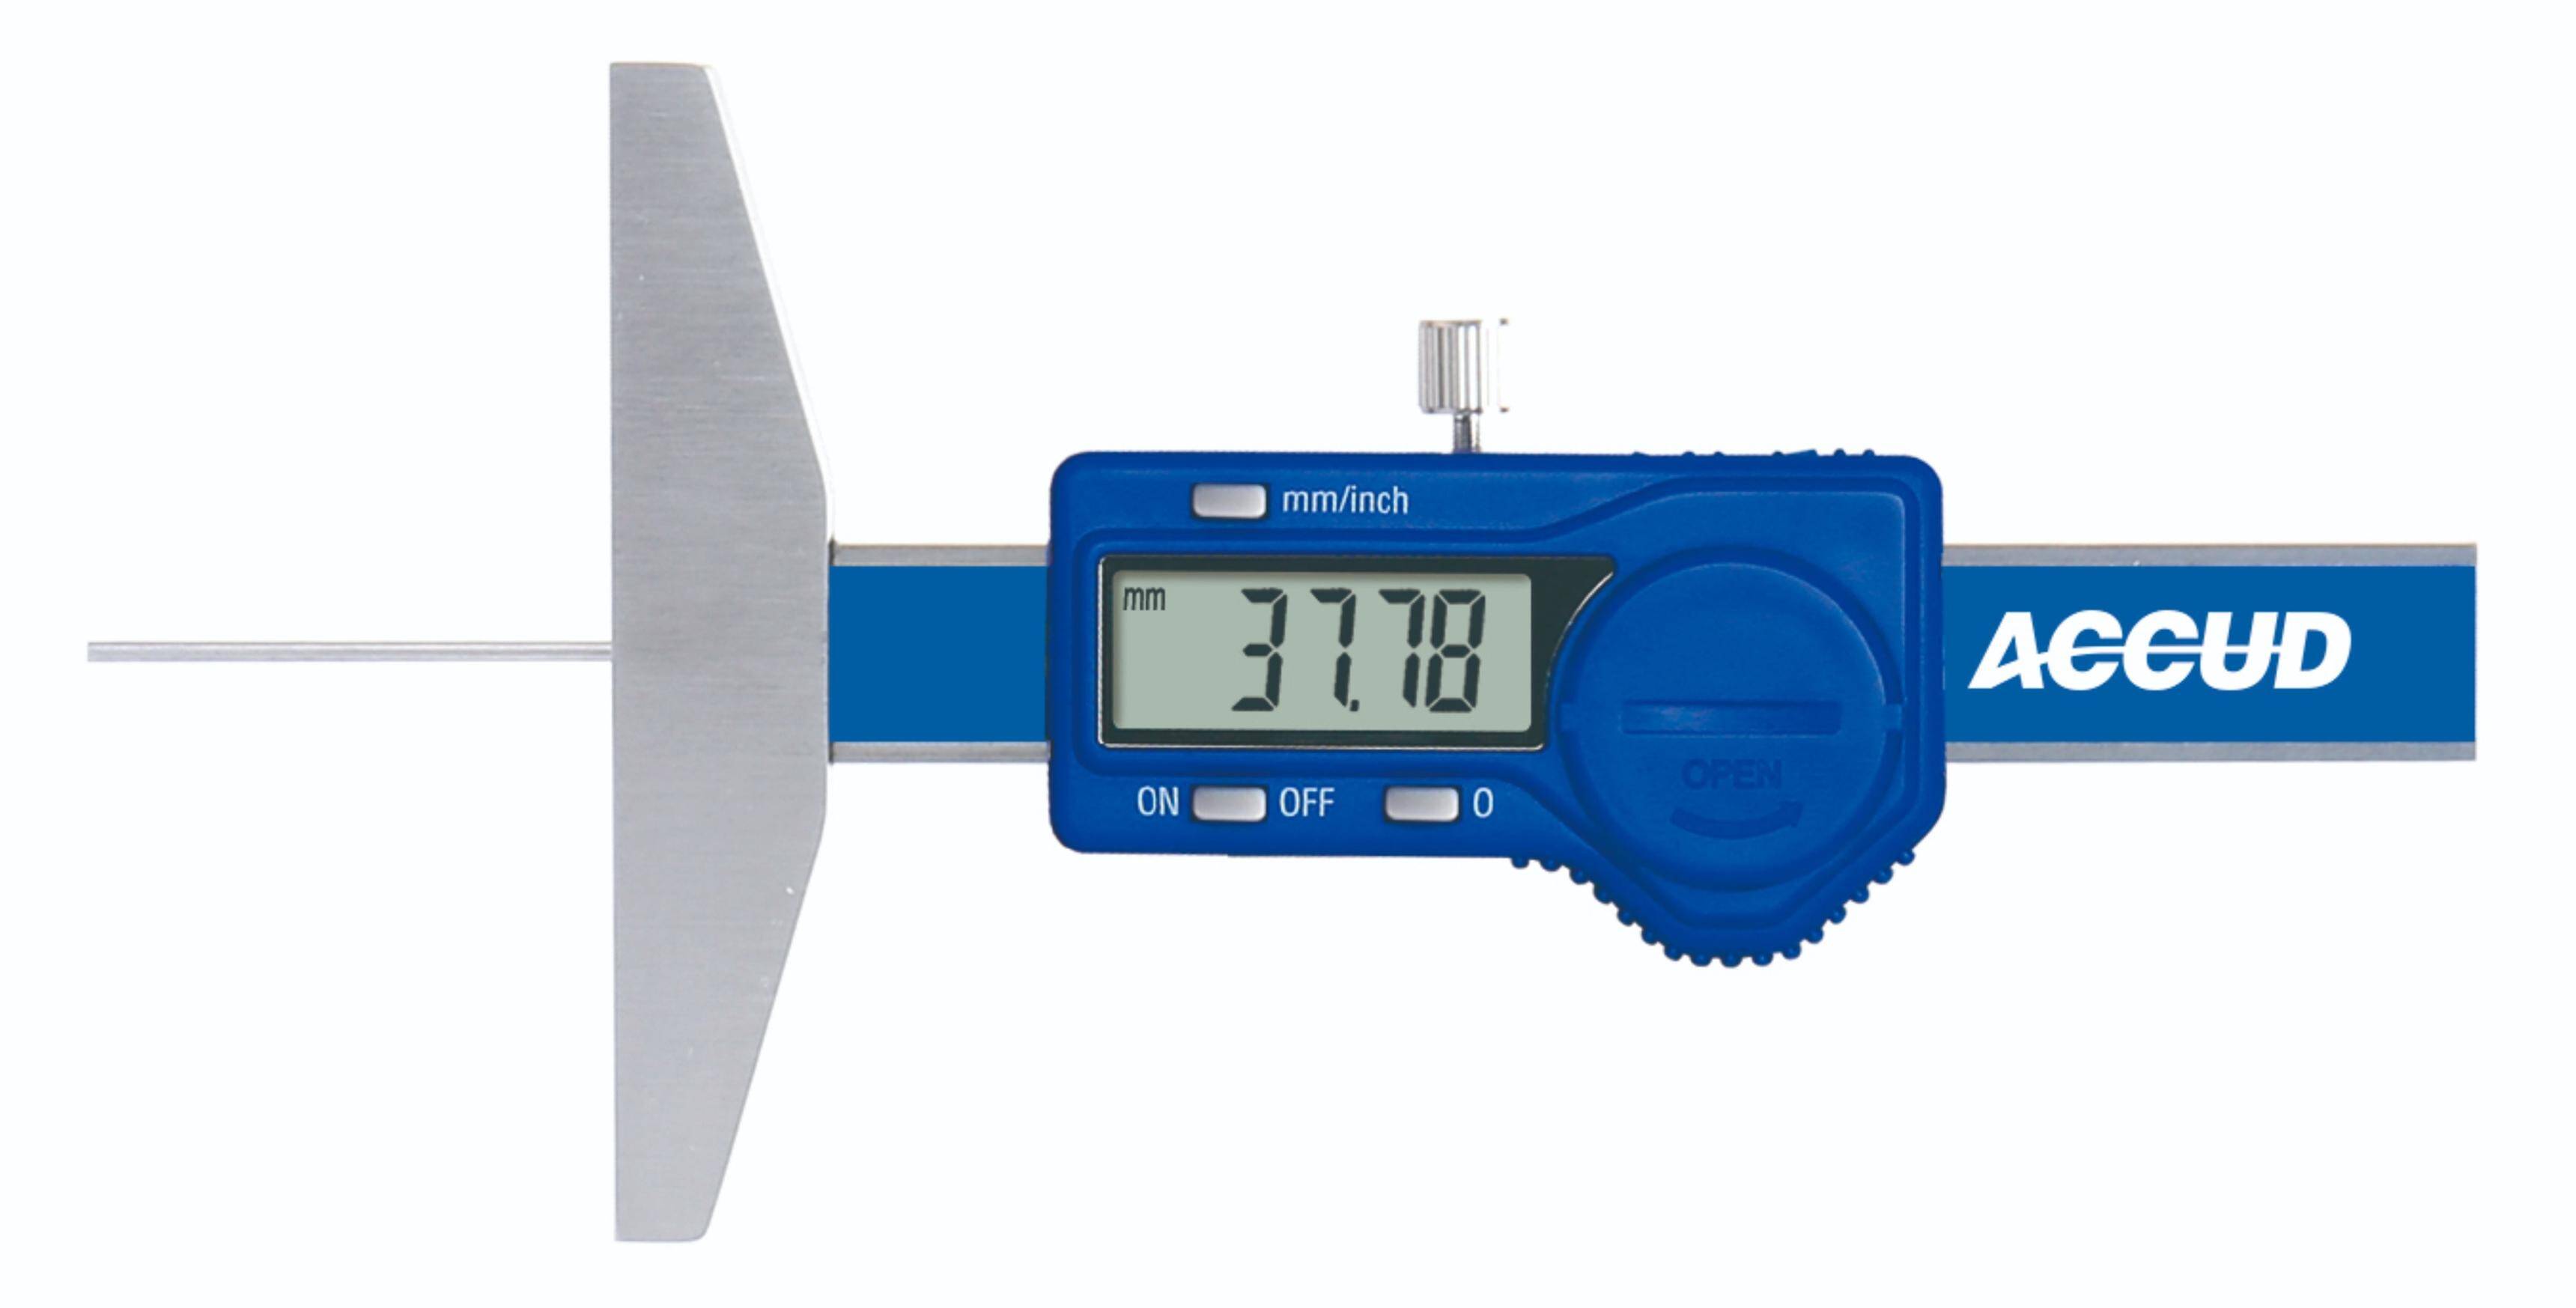 ACCUD głębokościomierz elektroniczny 150/0.01 mm z długim trzpieniem pomiarowym 194-006-11